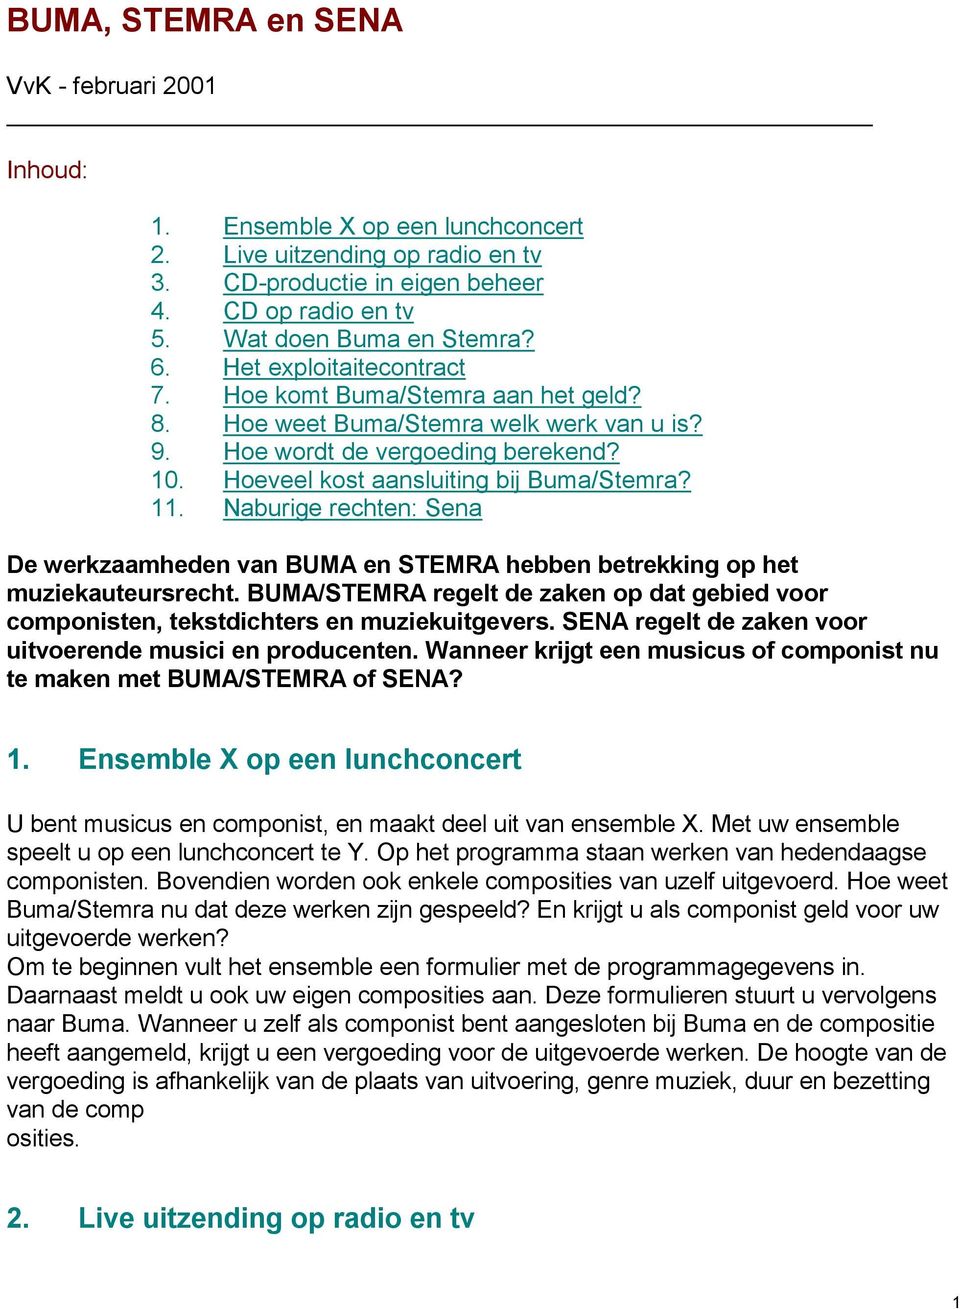 Naburige rechten: Sena De werkzaamheden van BUMA en STEMRA hebben betrekking op het muziekauteursrecht. BUMA/STEMRA regelt de zaken op dat gebied voor componisten, tekstdichters en muziekuitgevers.